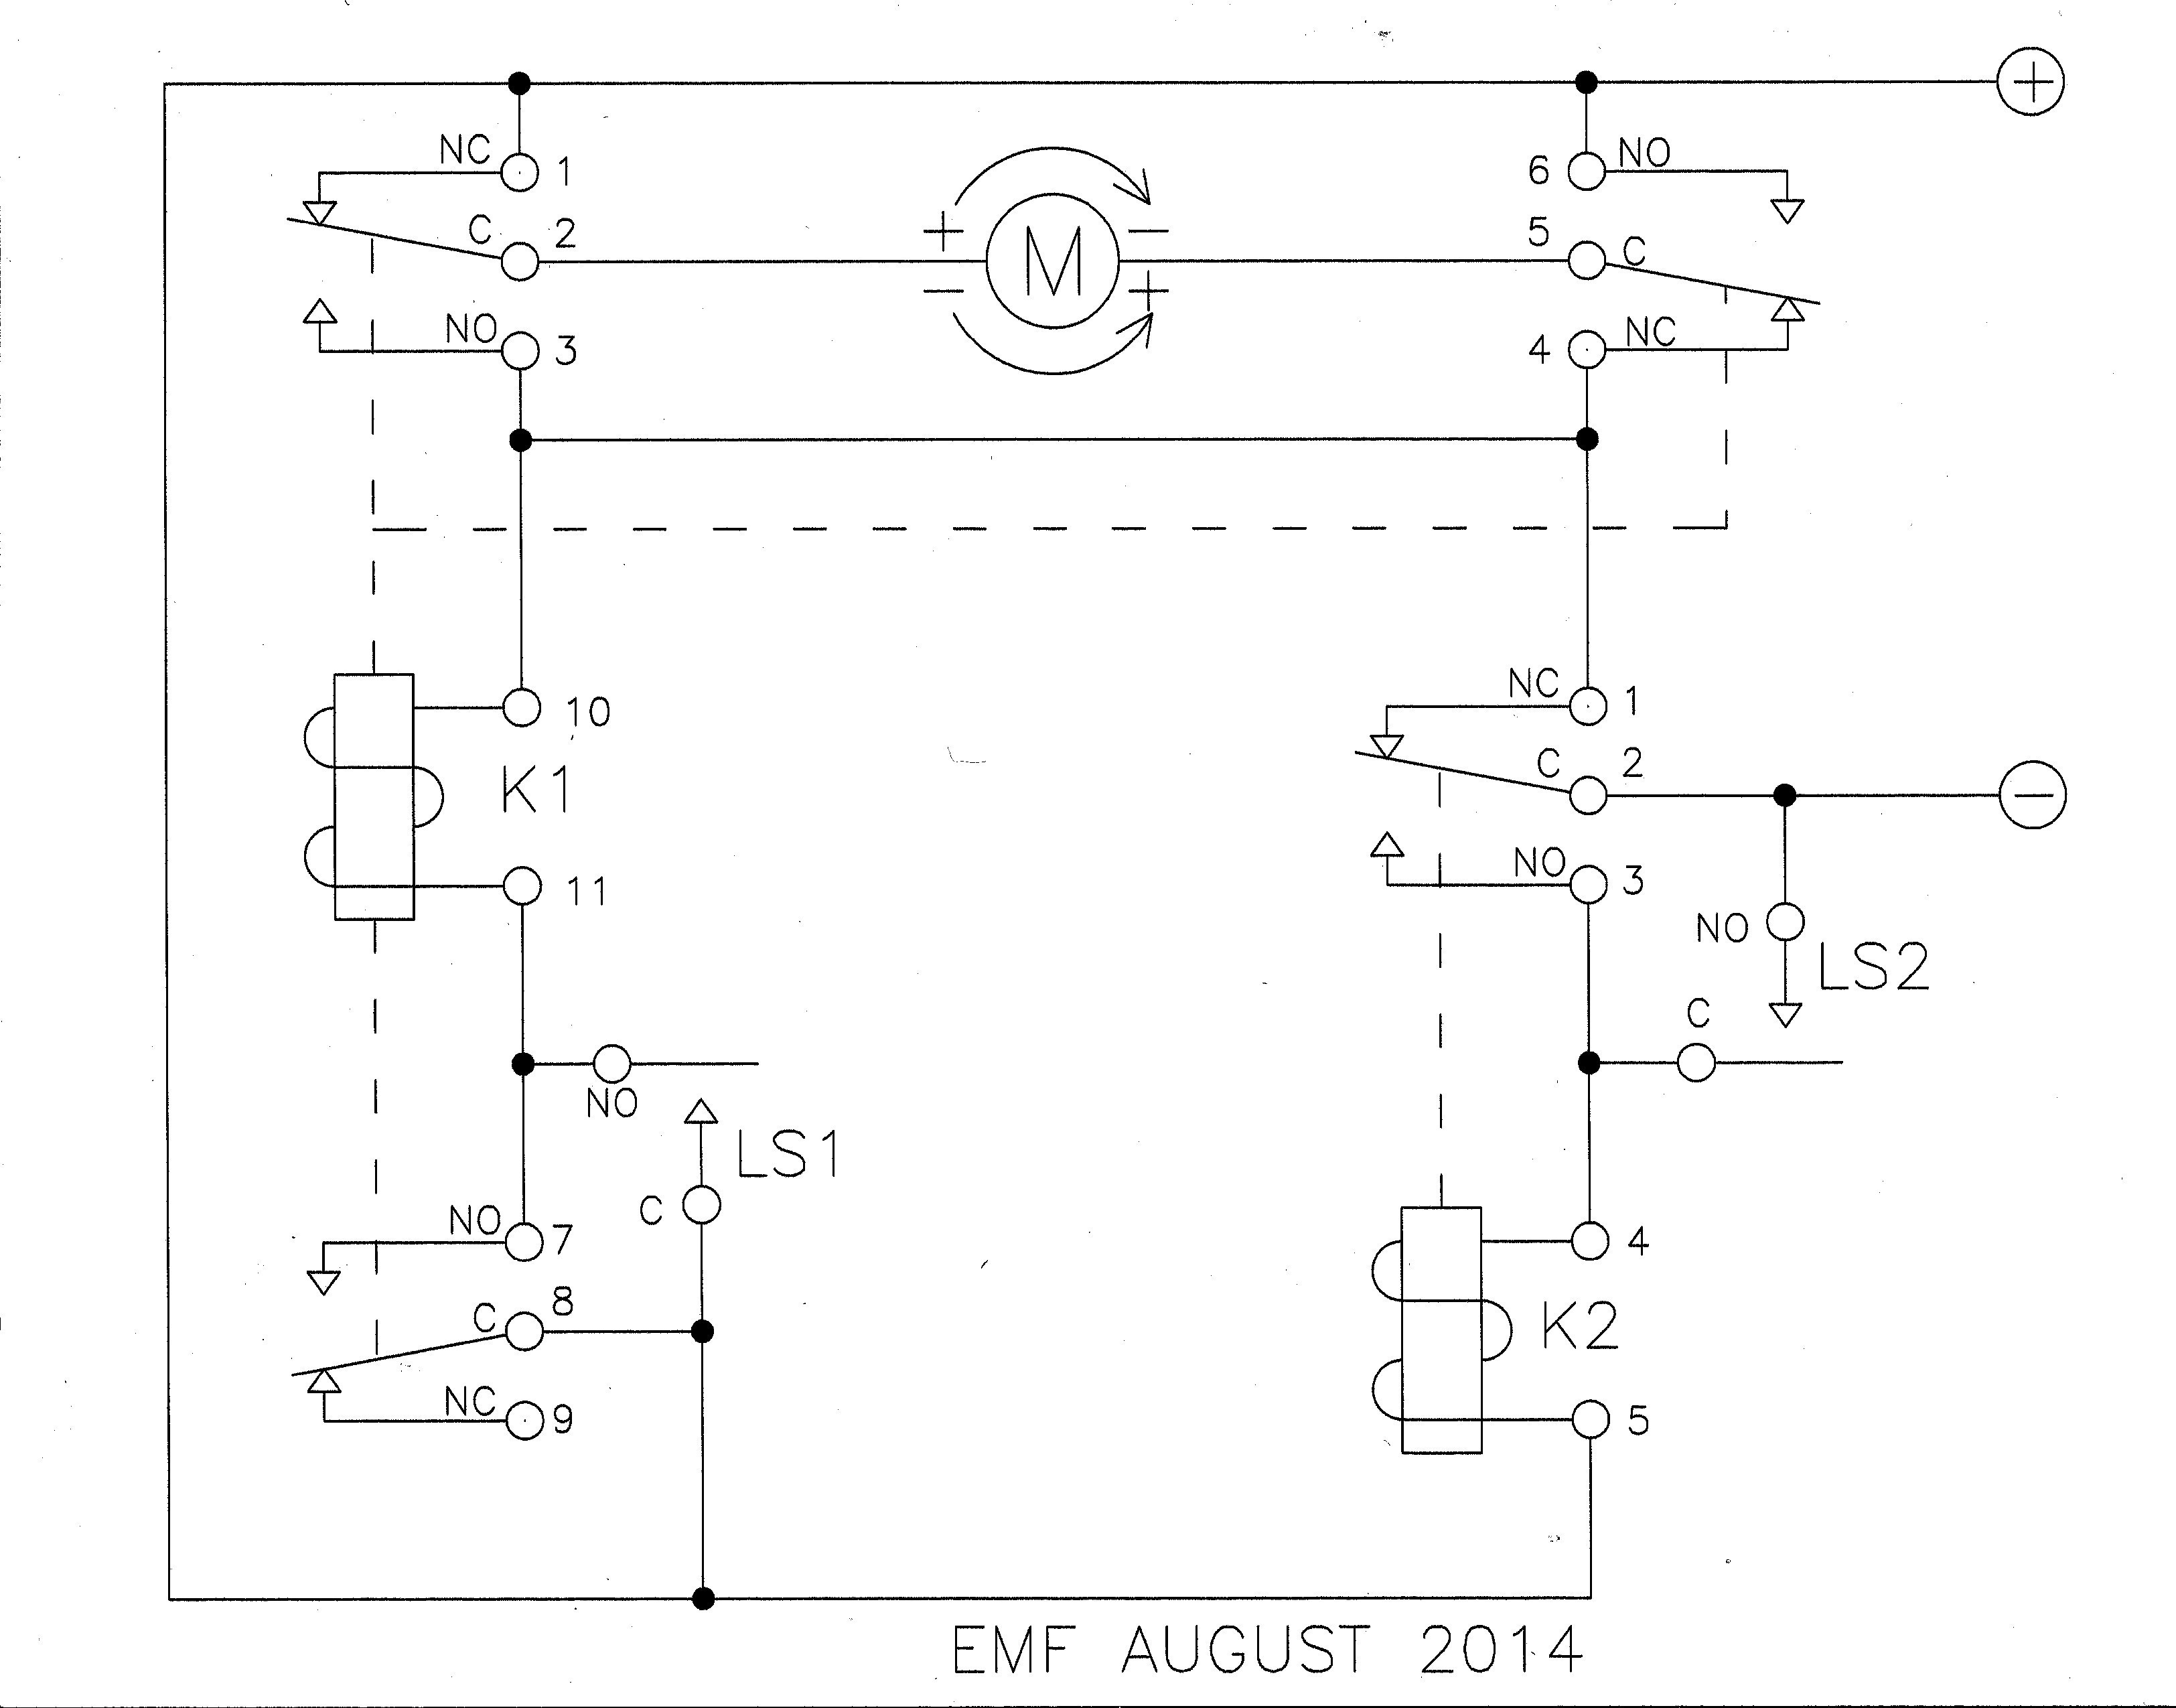 f Delay Timer Wiring Diagram Simple Dayton Time Delay Relay Wiring Diagram Sample